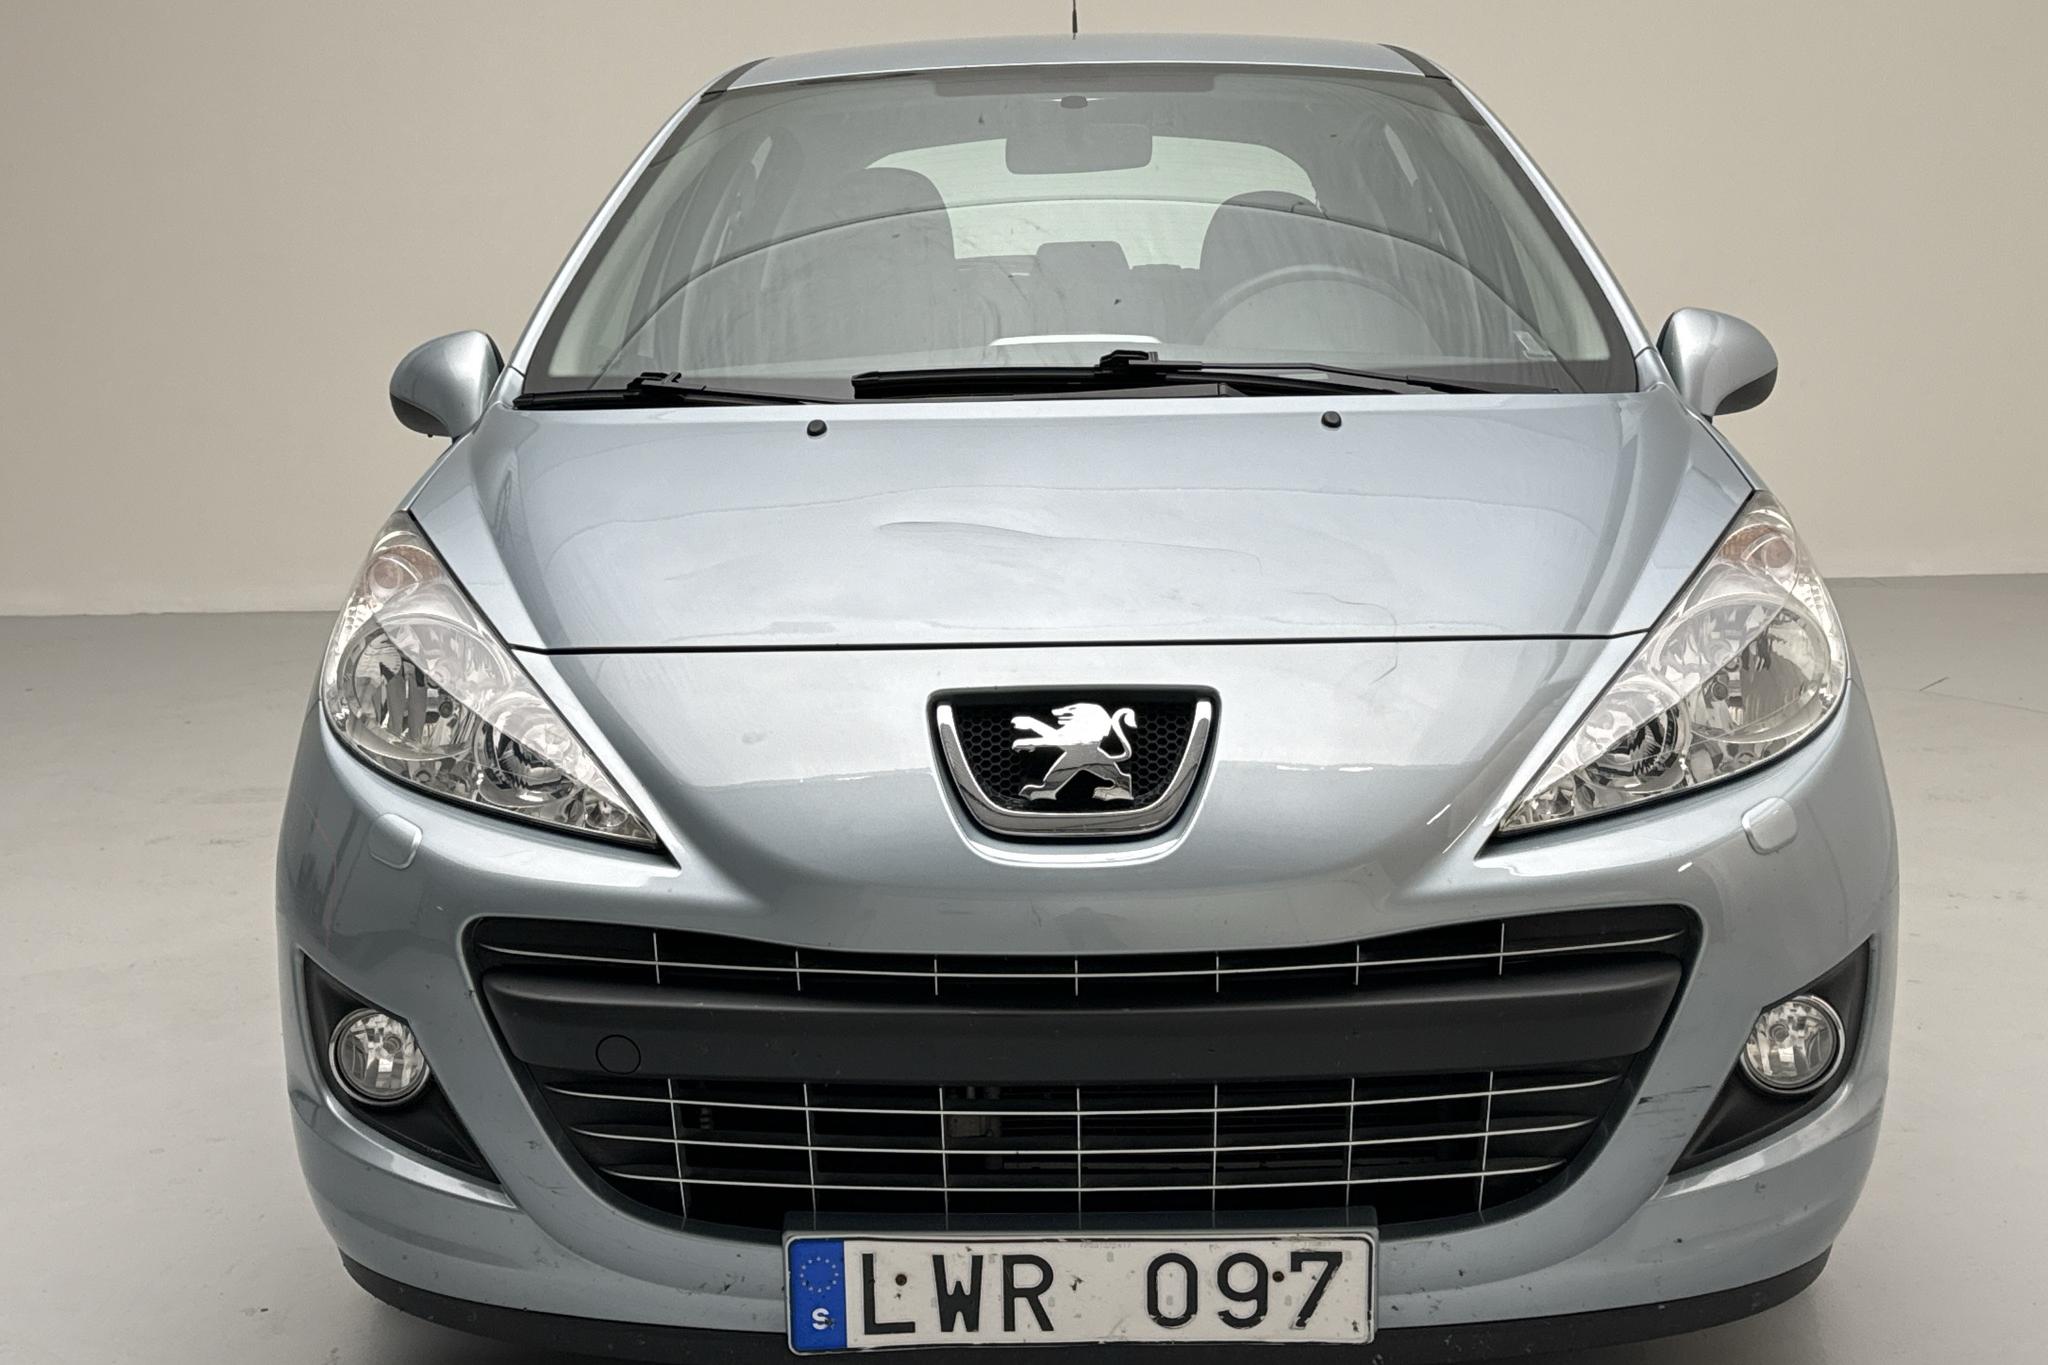 Peugeot 207 1.4 VTi 5dr (95hk) - 69 830 km - Manual - Light Blue - 2011